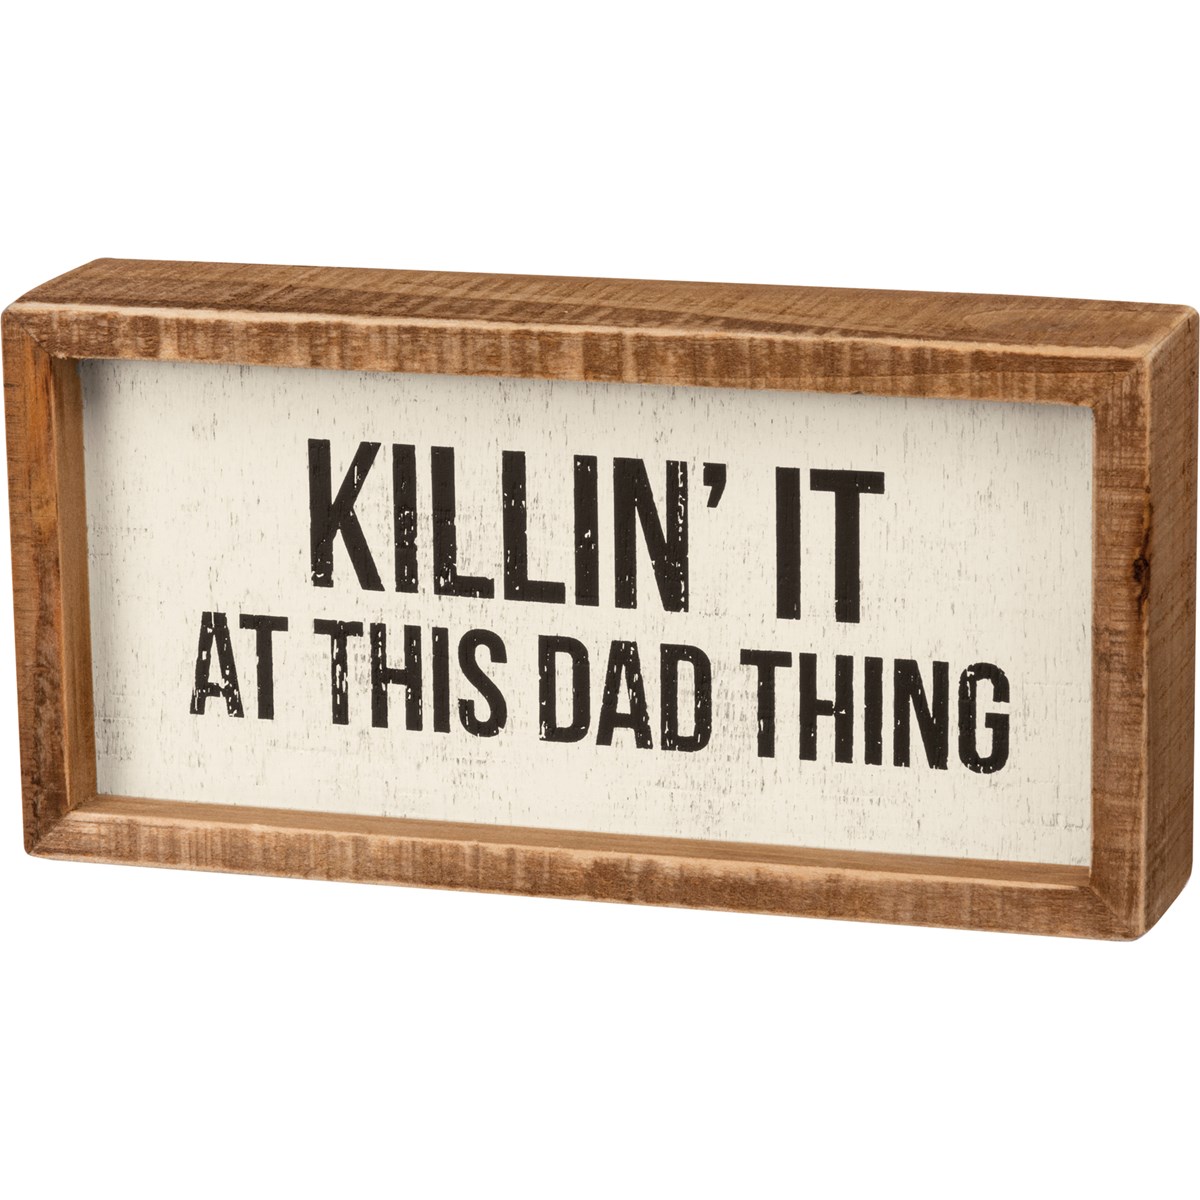 Inset Box Sign - Killin' It At This Dad Thing - 8" x 4" x 1.75" - Wood